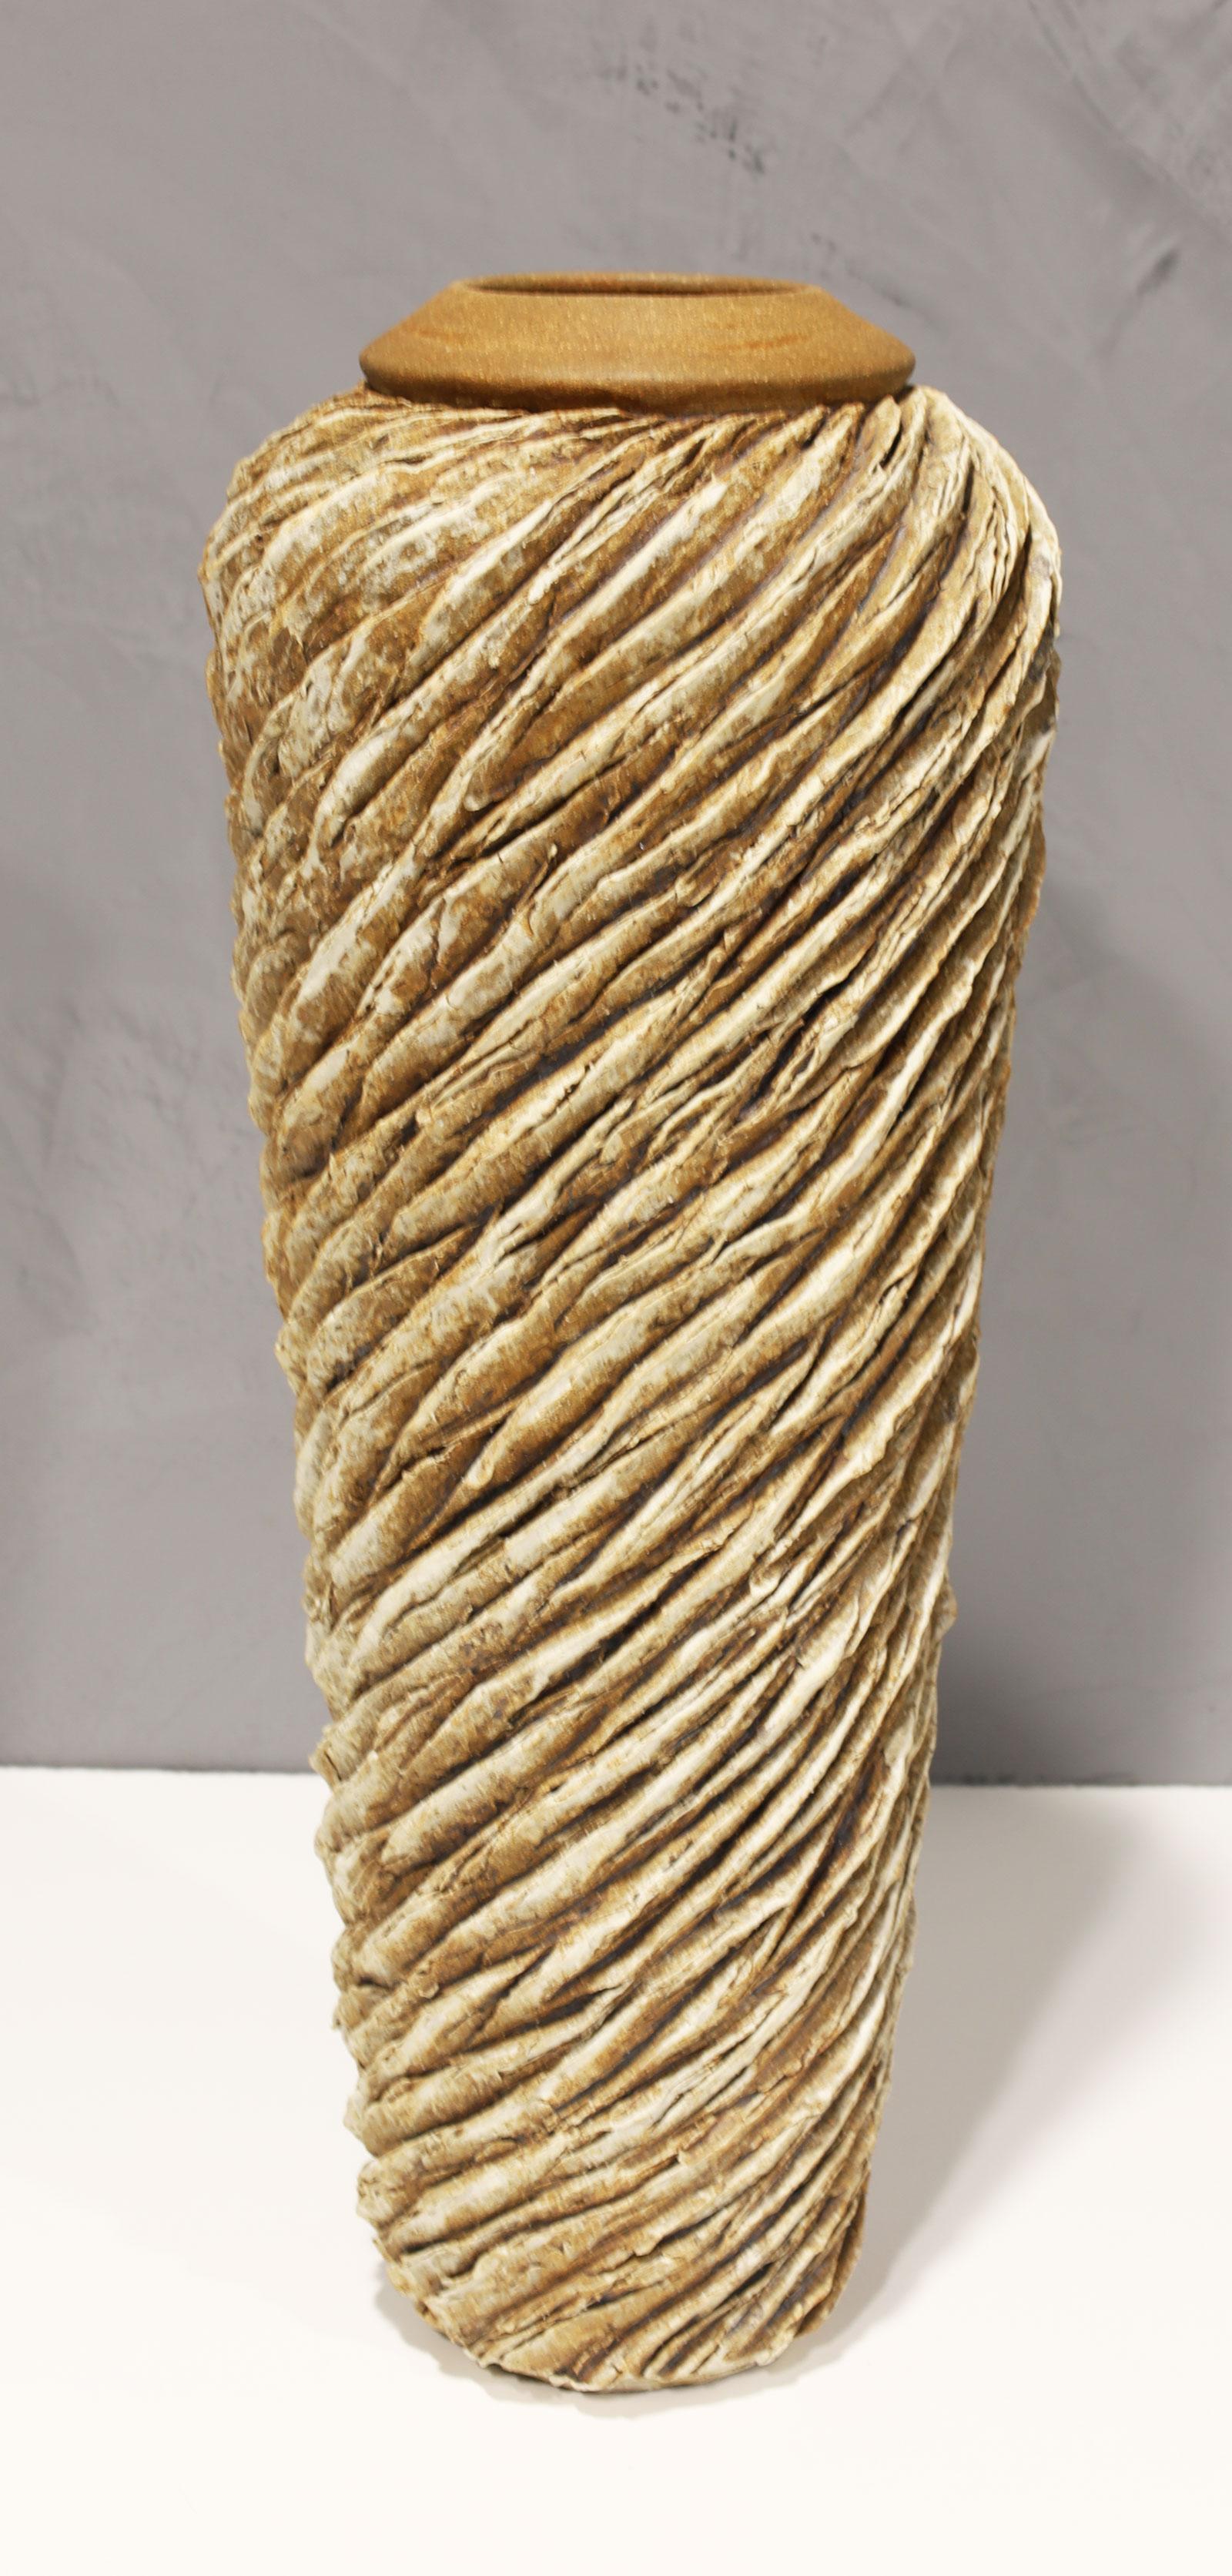 Sculpture en céramique sculptée de grande taille créée par Anne Goldman, en Californie. Récipient en forme de vase à large épaule en grès sculpté et percé, façonné à la roue, décoré d'engobe de porcelaine et de fer. Très lourd.

Extrait de la